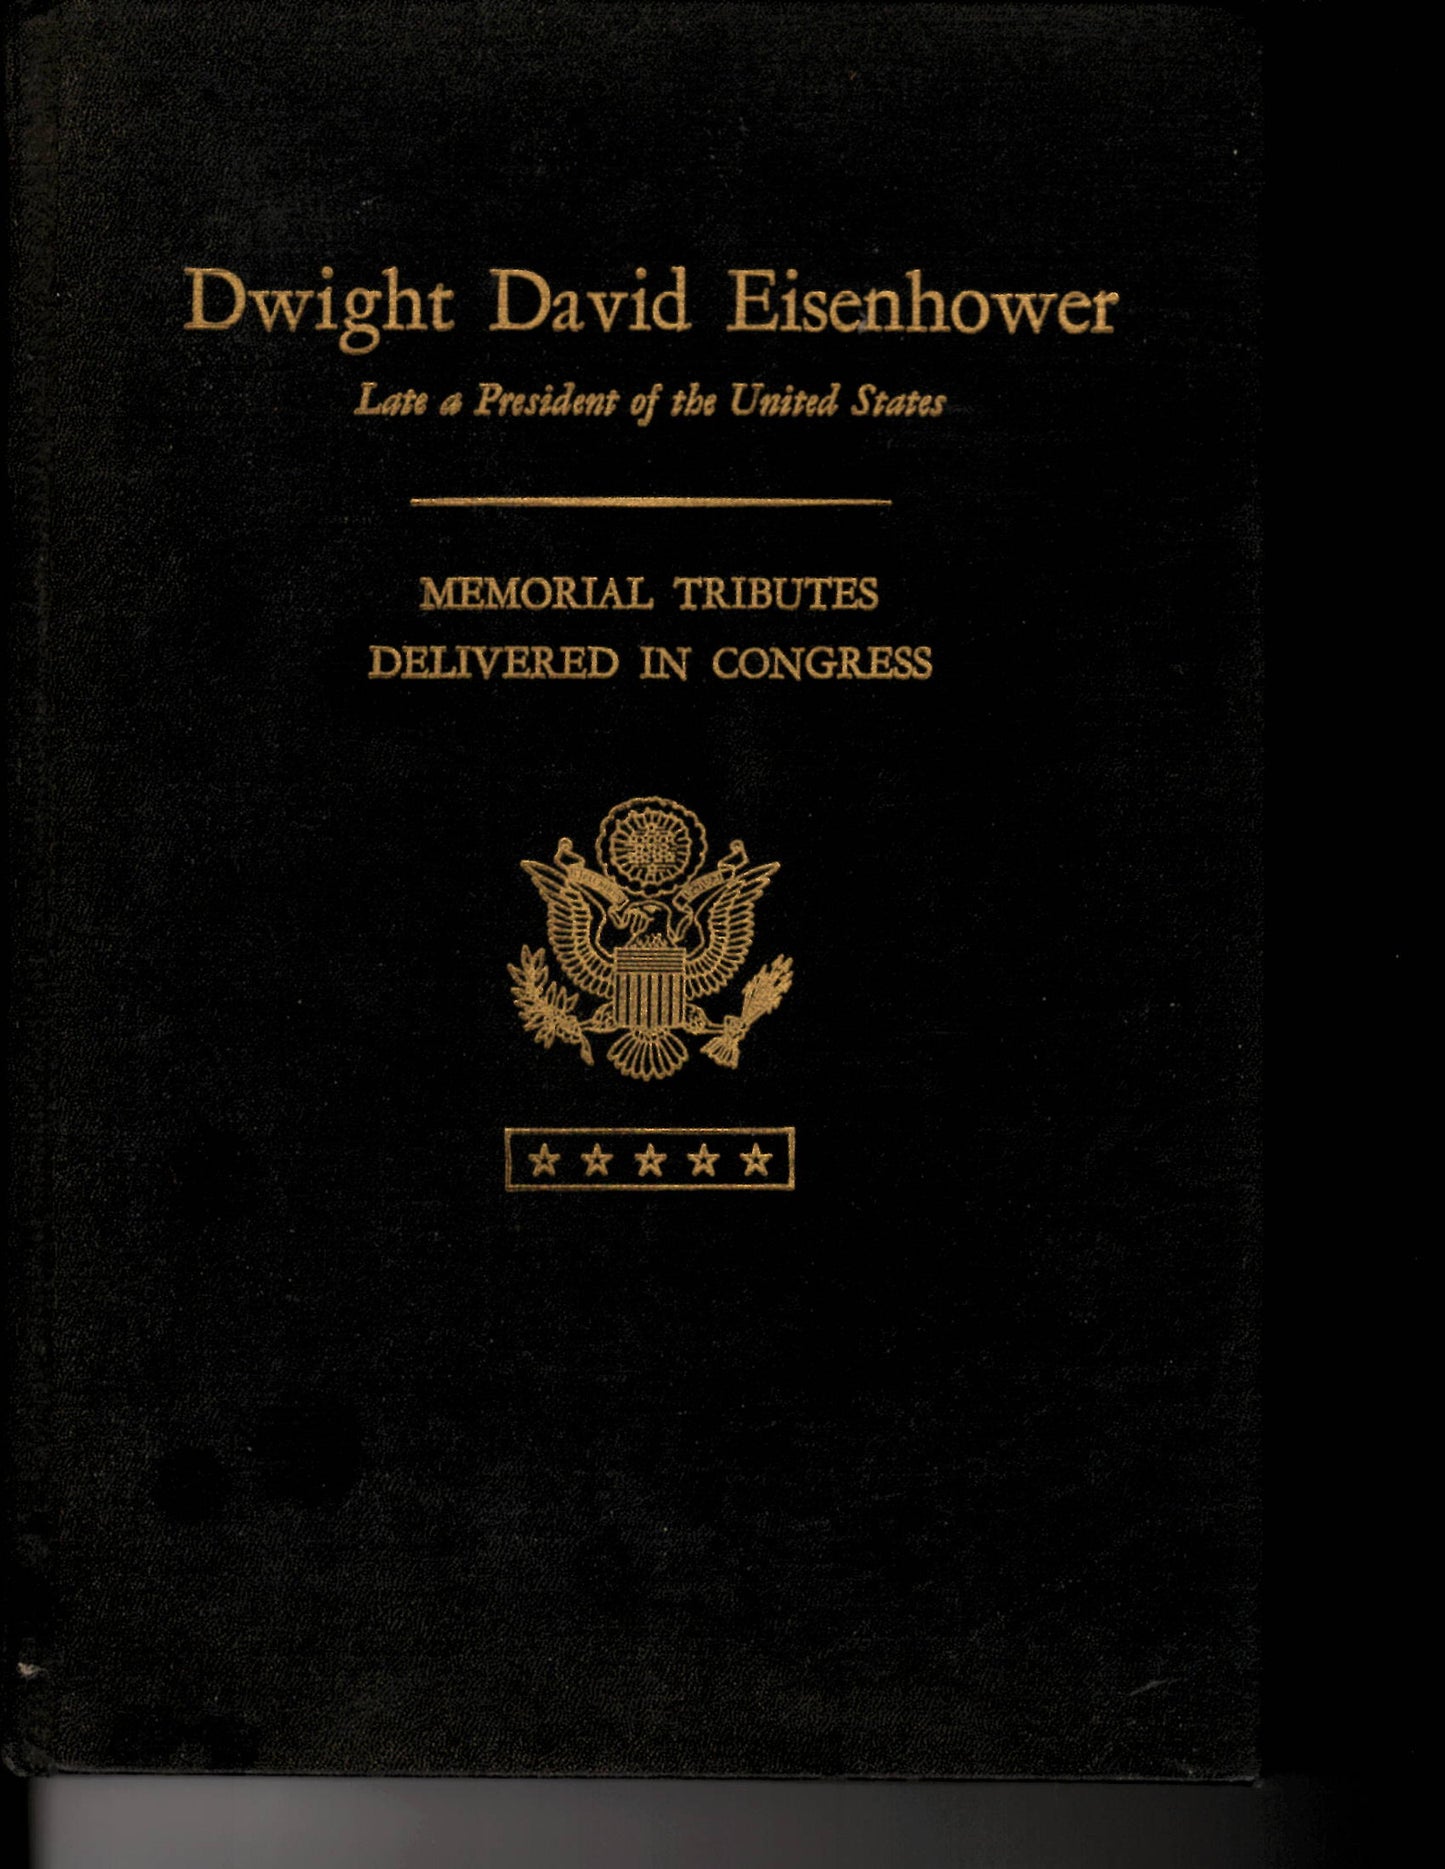 04 27 1973 Dwight David Eisenhower Memorial Tributes